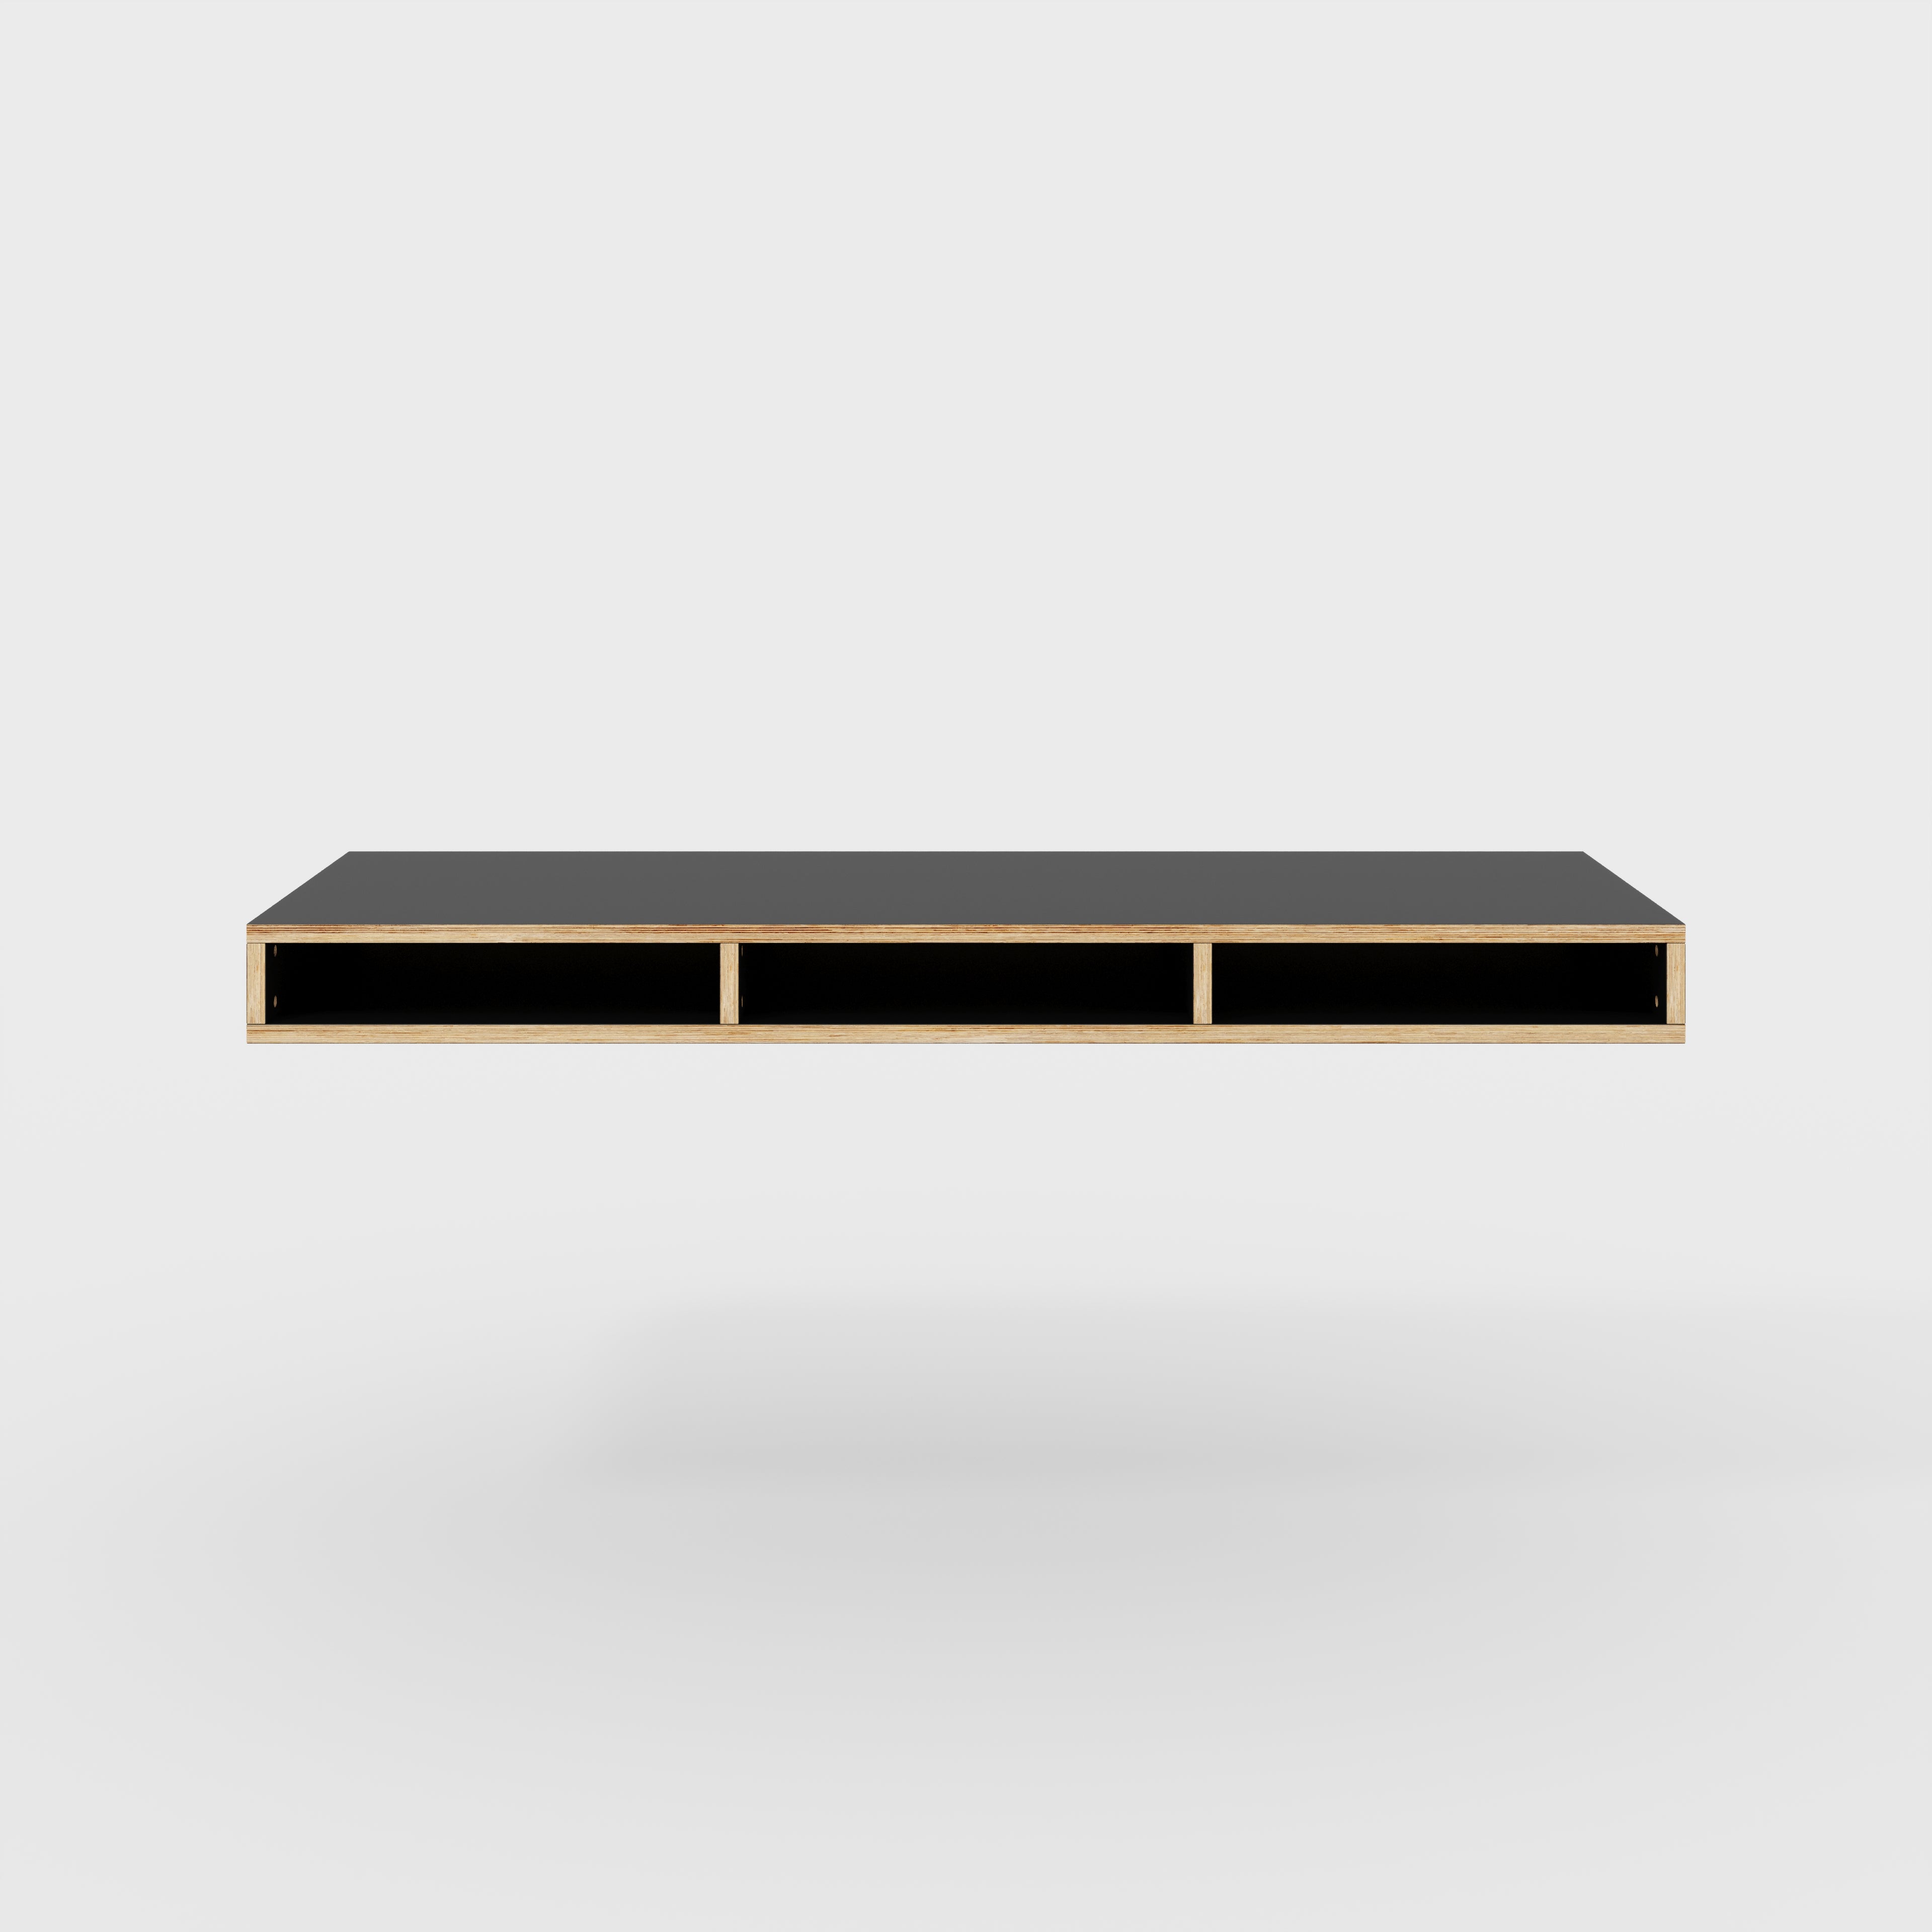 Plywood Desktop with Storage - Formica Diamond Black - 1800(w) x 600(d) x 150(h)